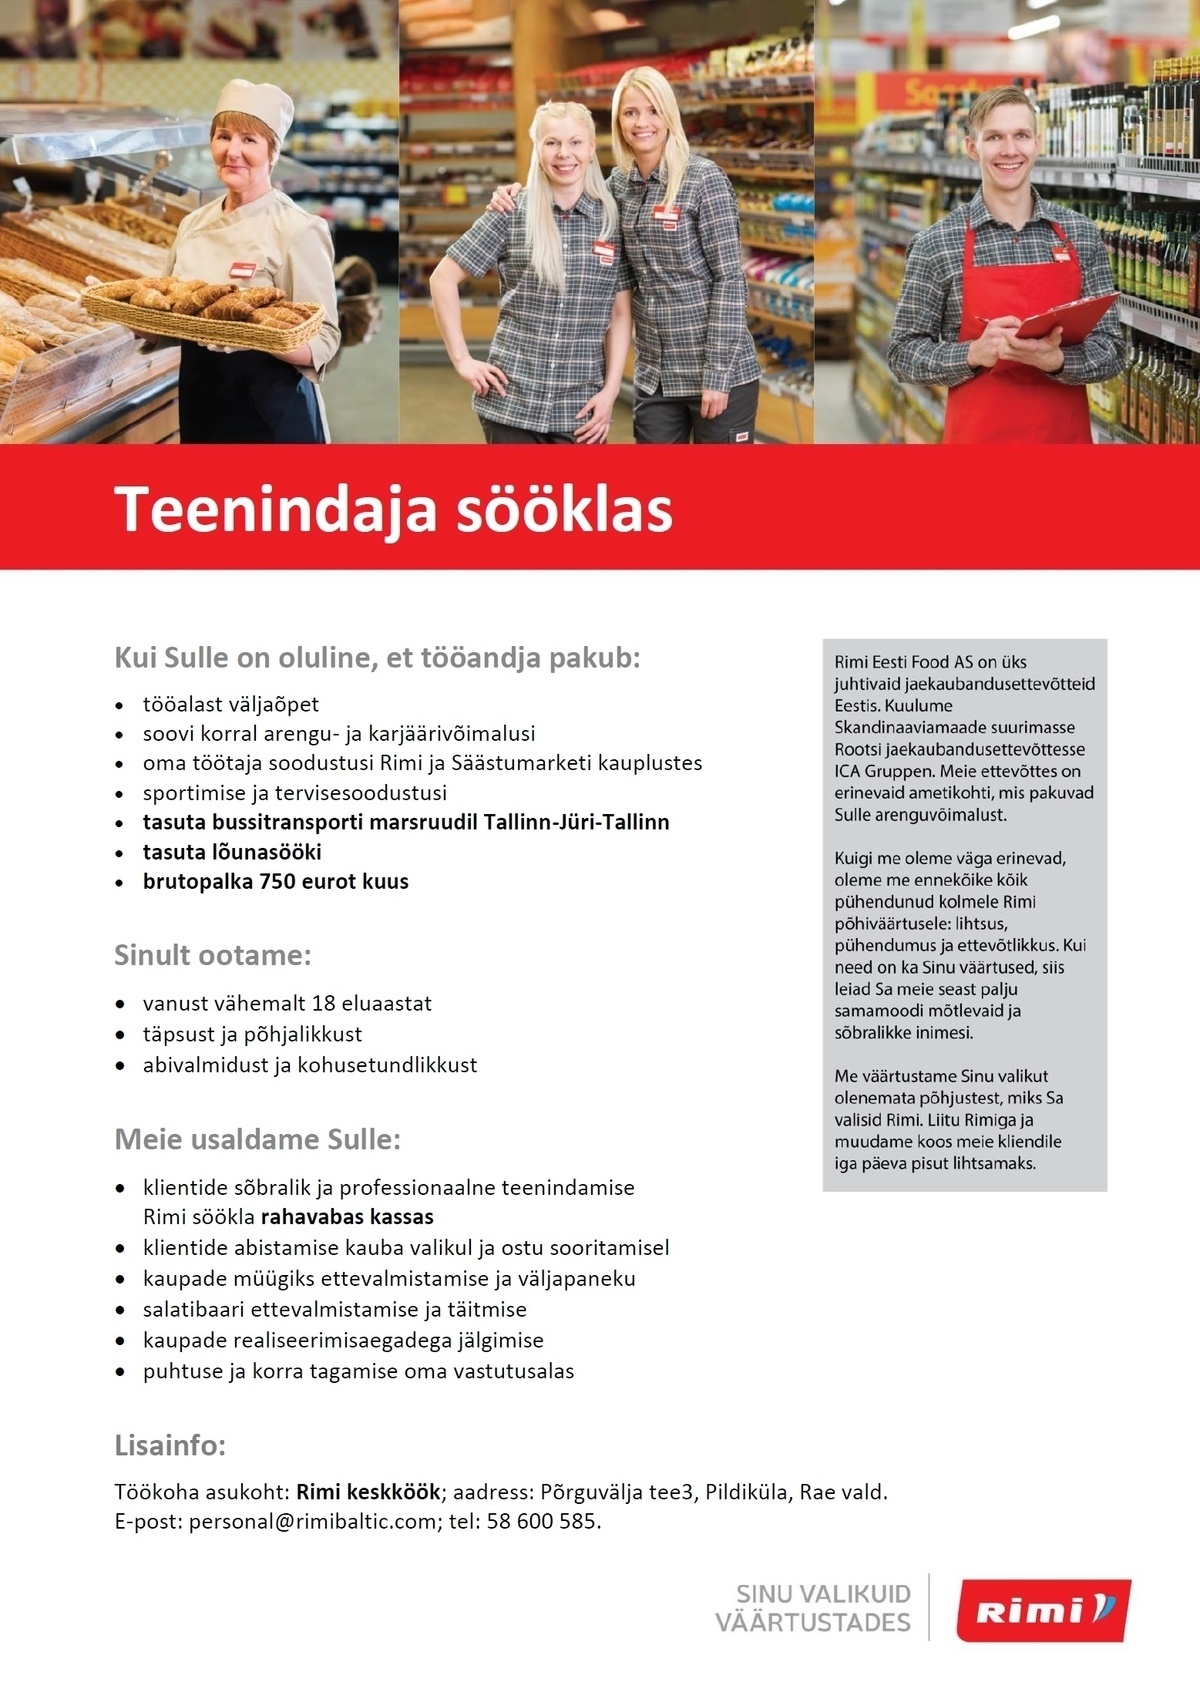 Rimi Eesti Food AS Teenindaja sööklas - Rimi Keskköök